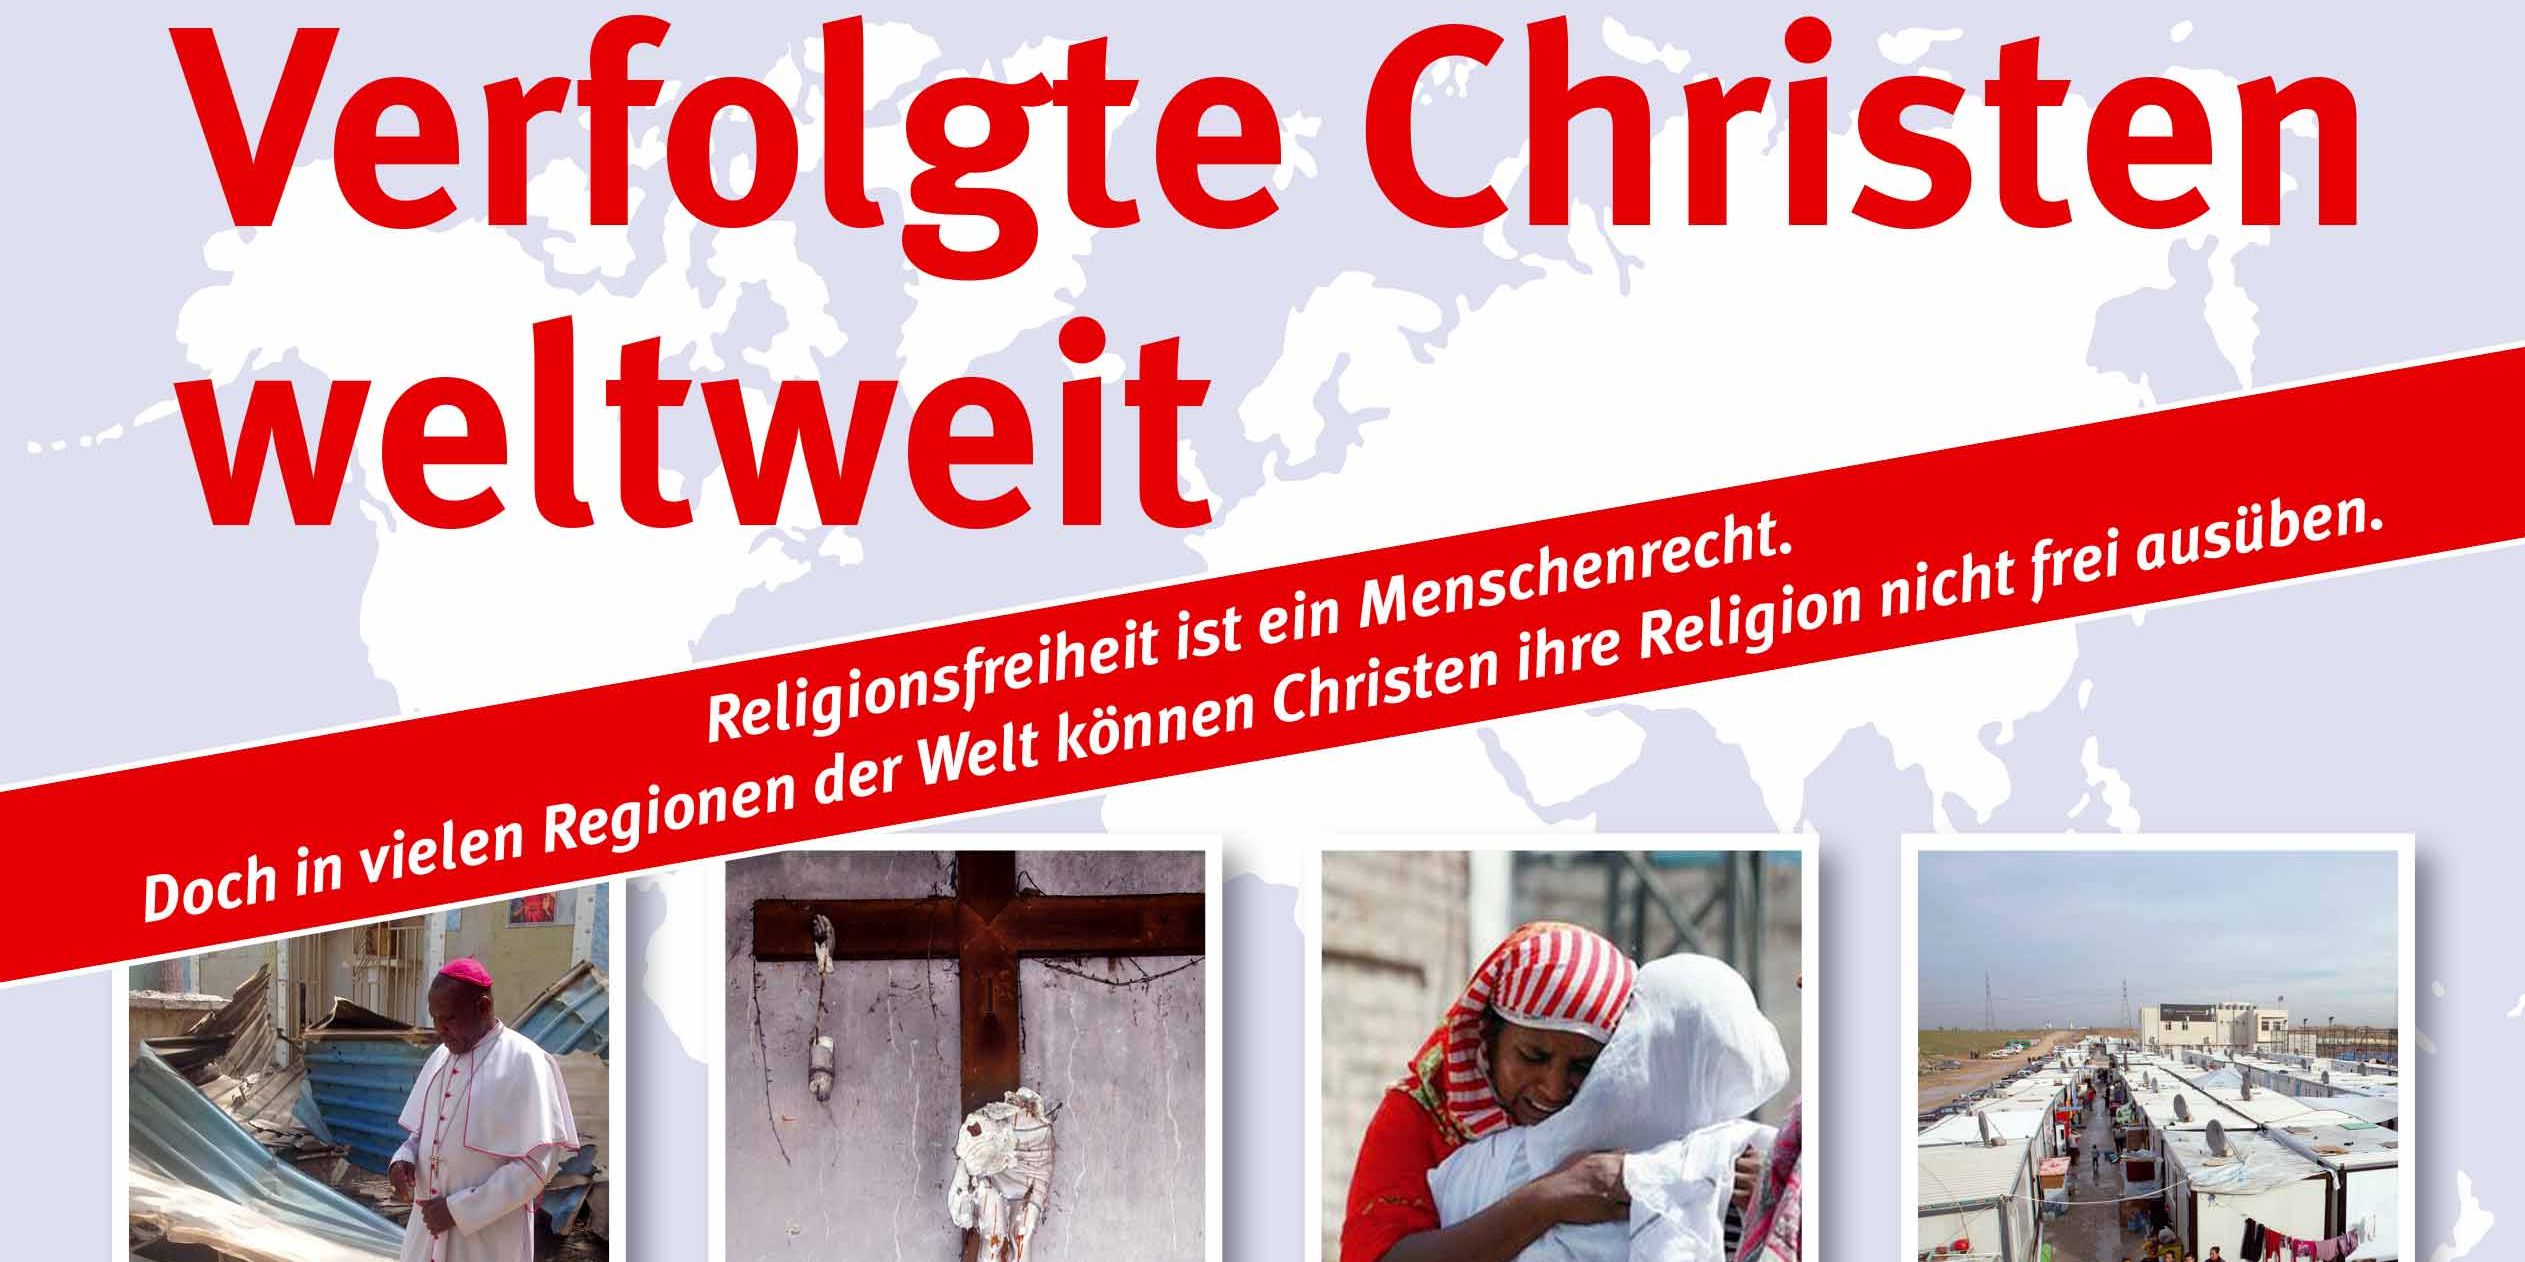 Ausstellung "Verfolgte Christen weltweit" im St.-Paulus-Dom